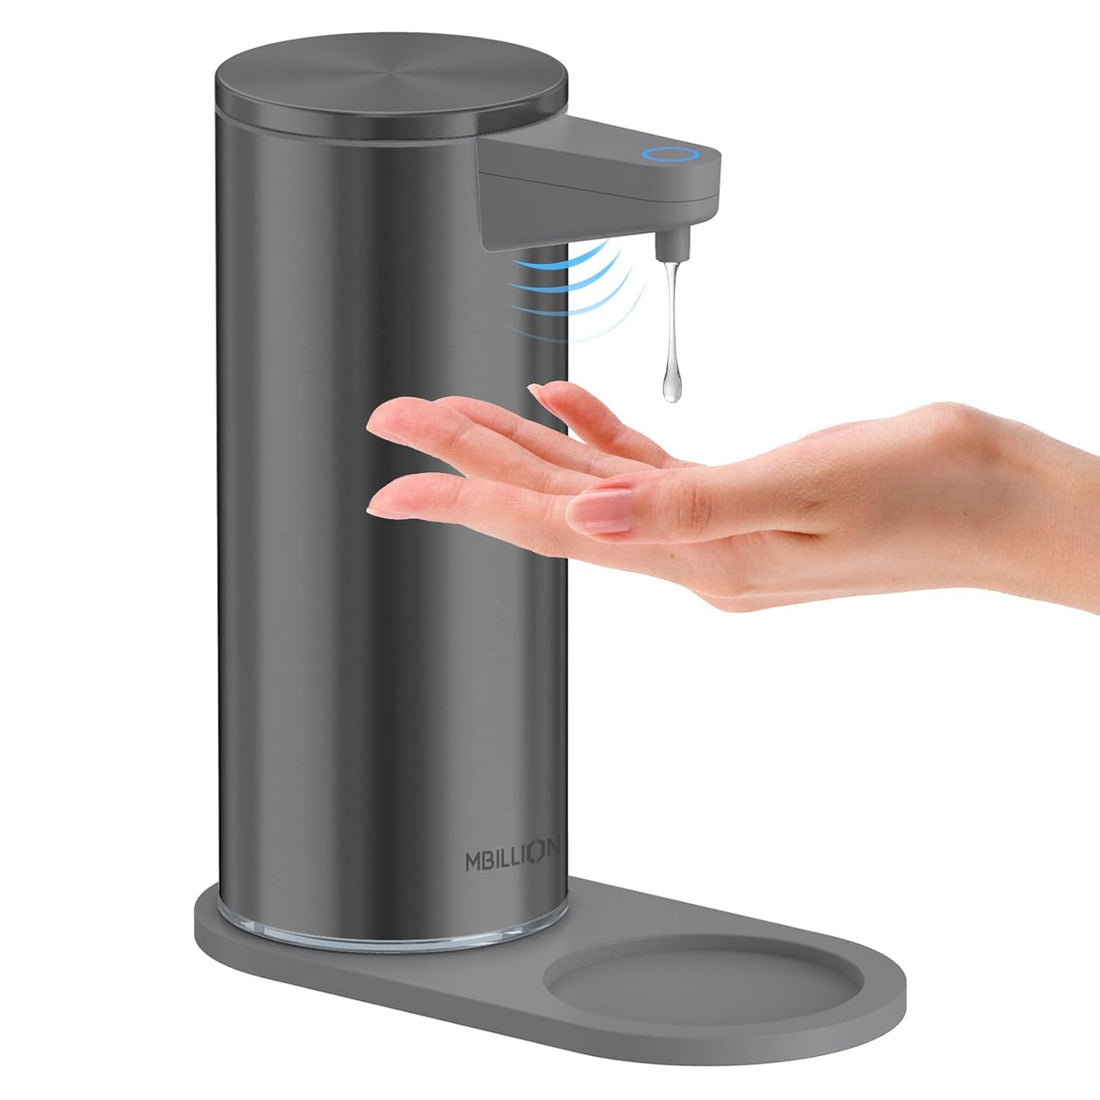 Automatic Soap Dispenser Touchless,Mbillion Soap Dispensers Touch-Free Rechargeable Sensor Liquid Soap Pump Dispenser(Gray)